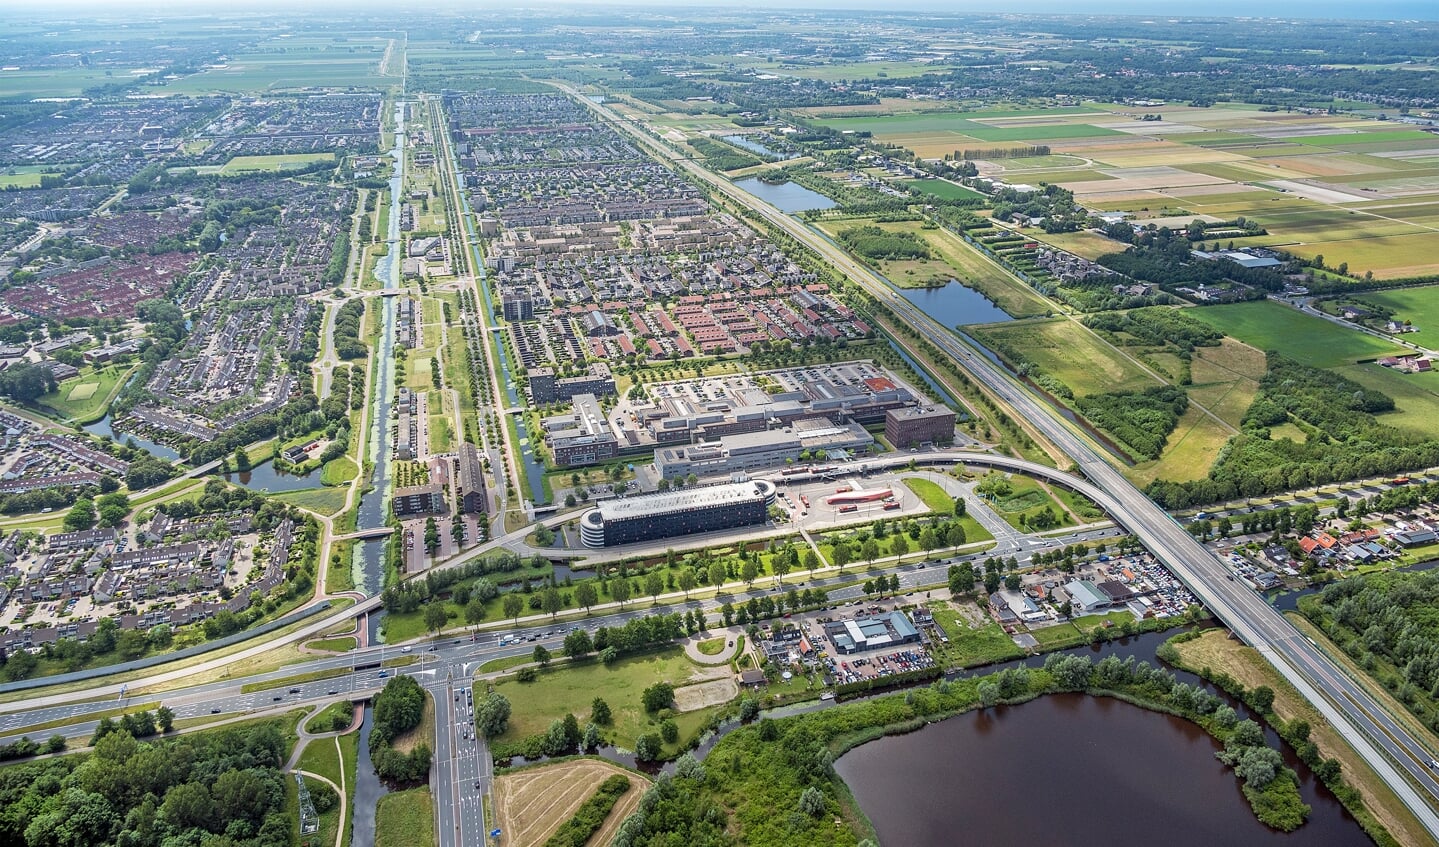 Floriande, de grootste Vinex-locatie in de gemeente Haarlemmermeer. 